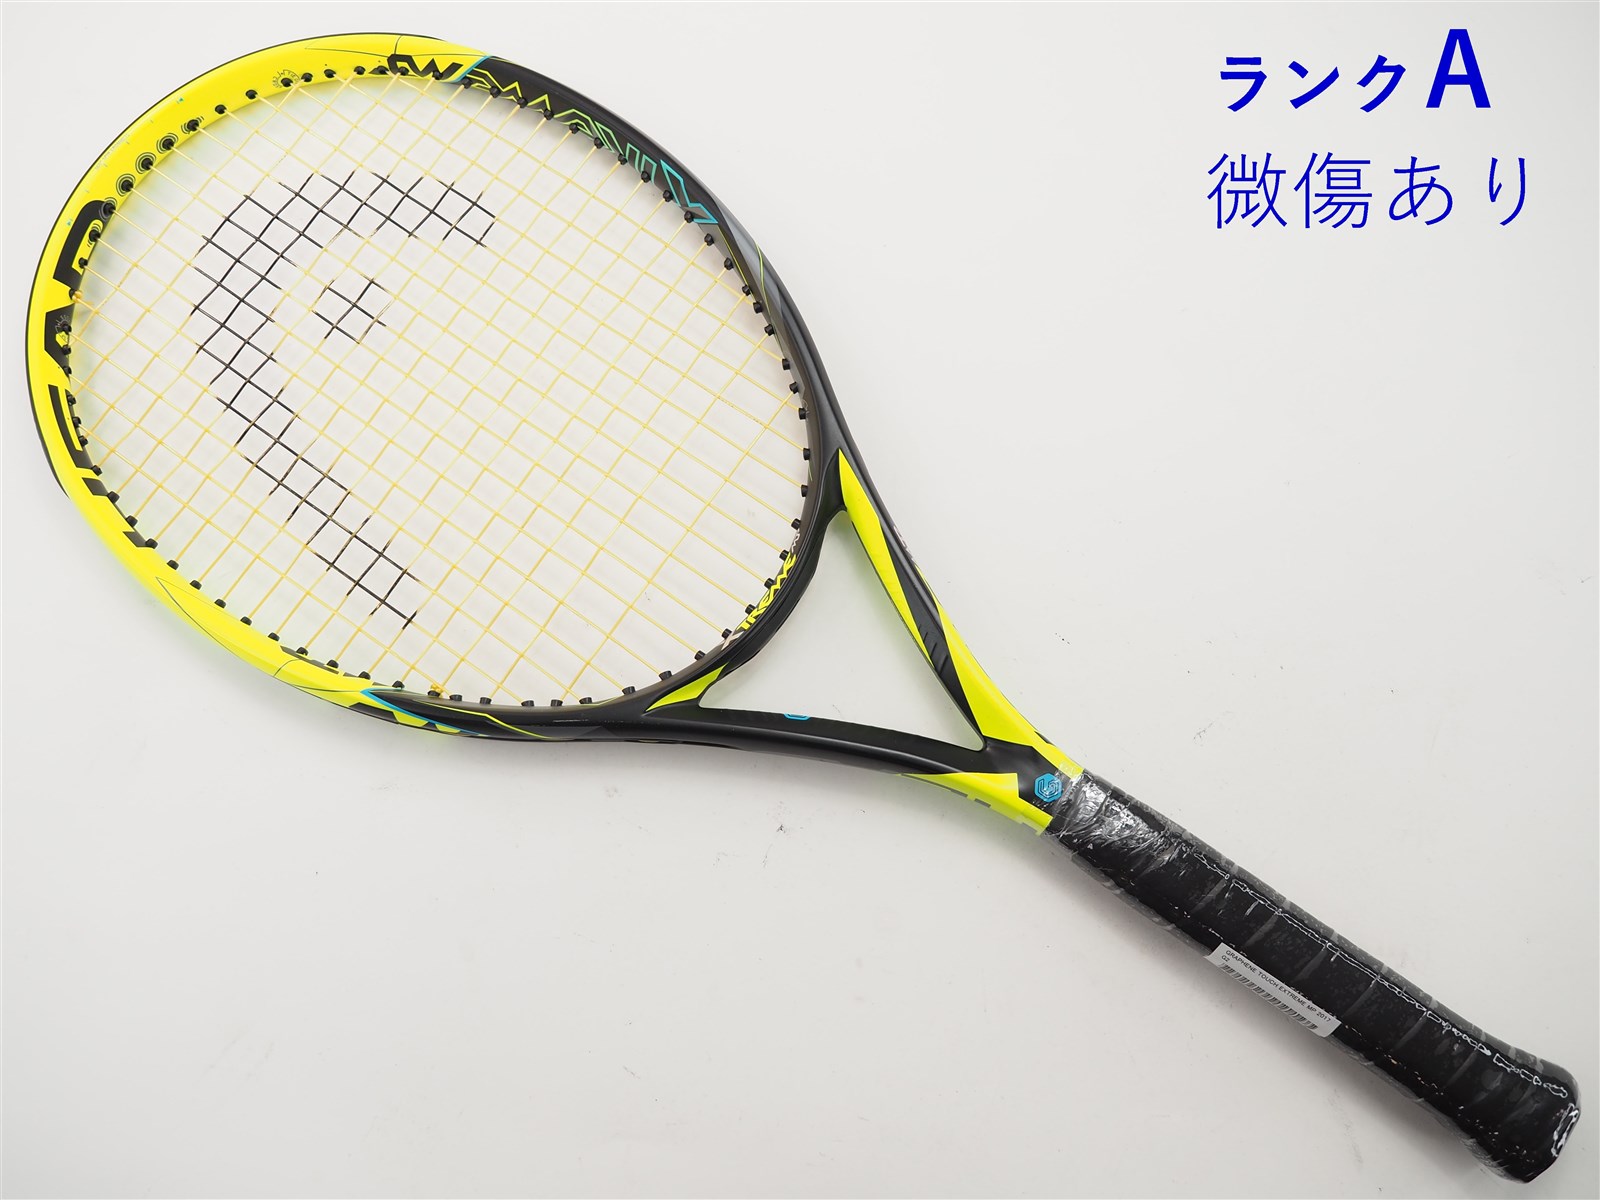 テニスラケット ヘッド グラフィン タッチ エクストリーム MP 2017年モデル (G2)HEAD GRAPHENE TOUCH EXTREME MP 2017